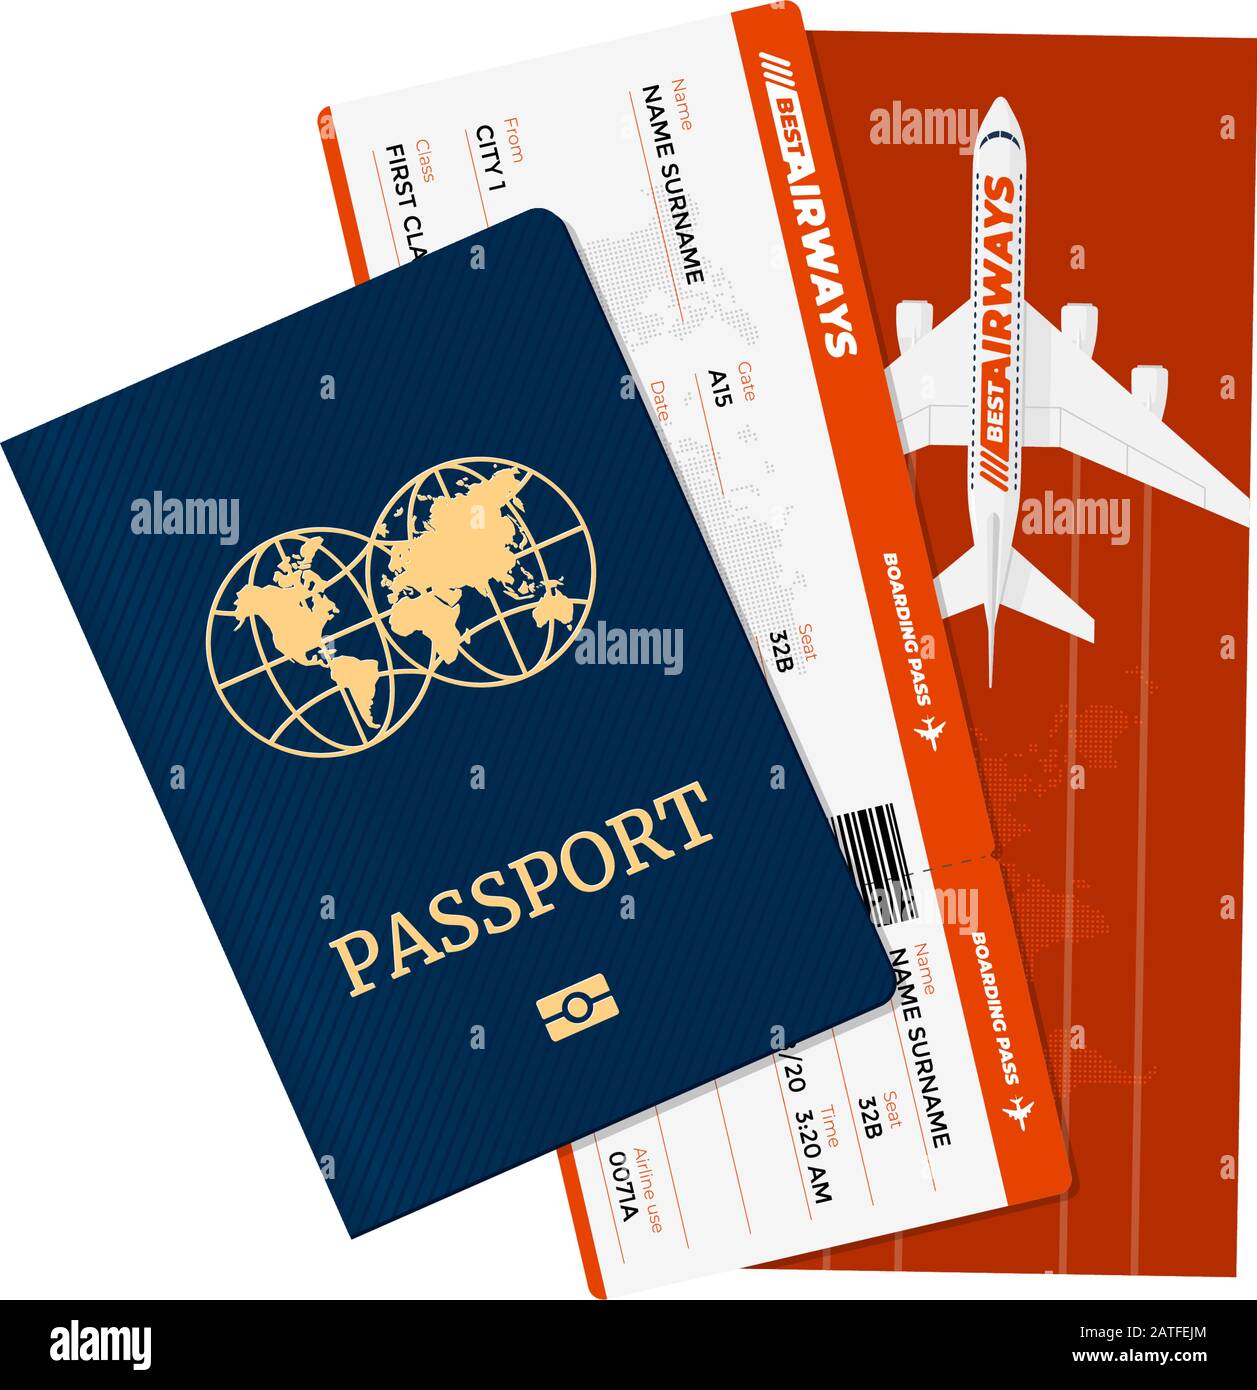 Passaporto con biglietti aerei. Documento di identificazione personale e carta d'imbarco della compagnia aerea. Vettore internazionale turismo viaggiare concetto di illustrazione isolato Illustrazione Vettoriale